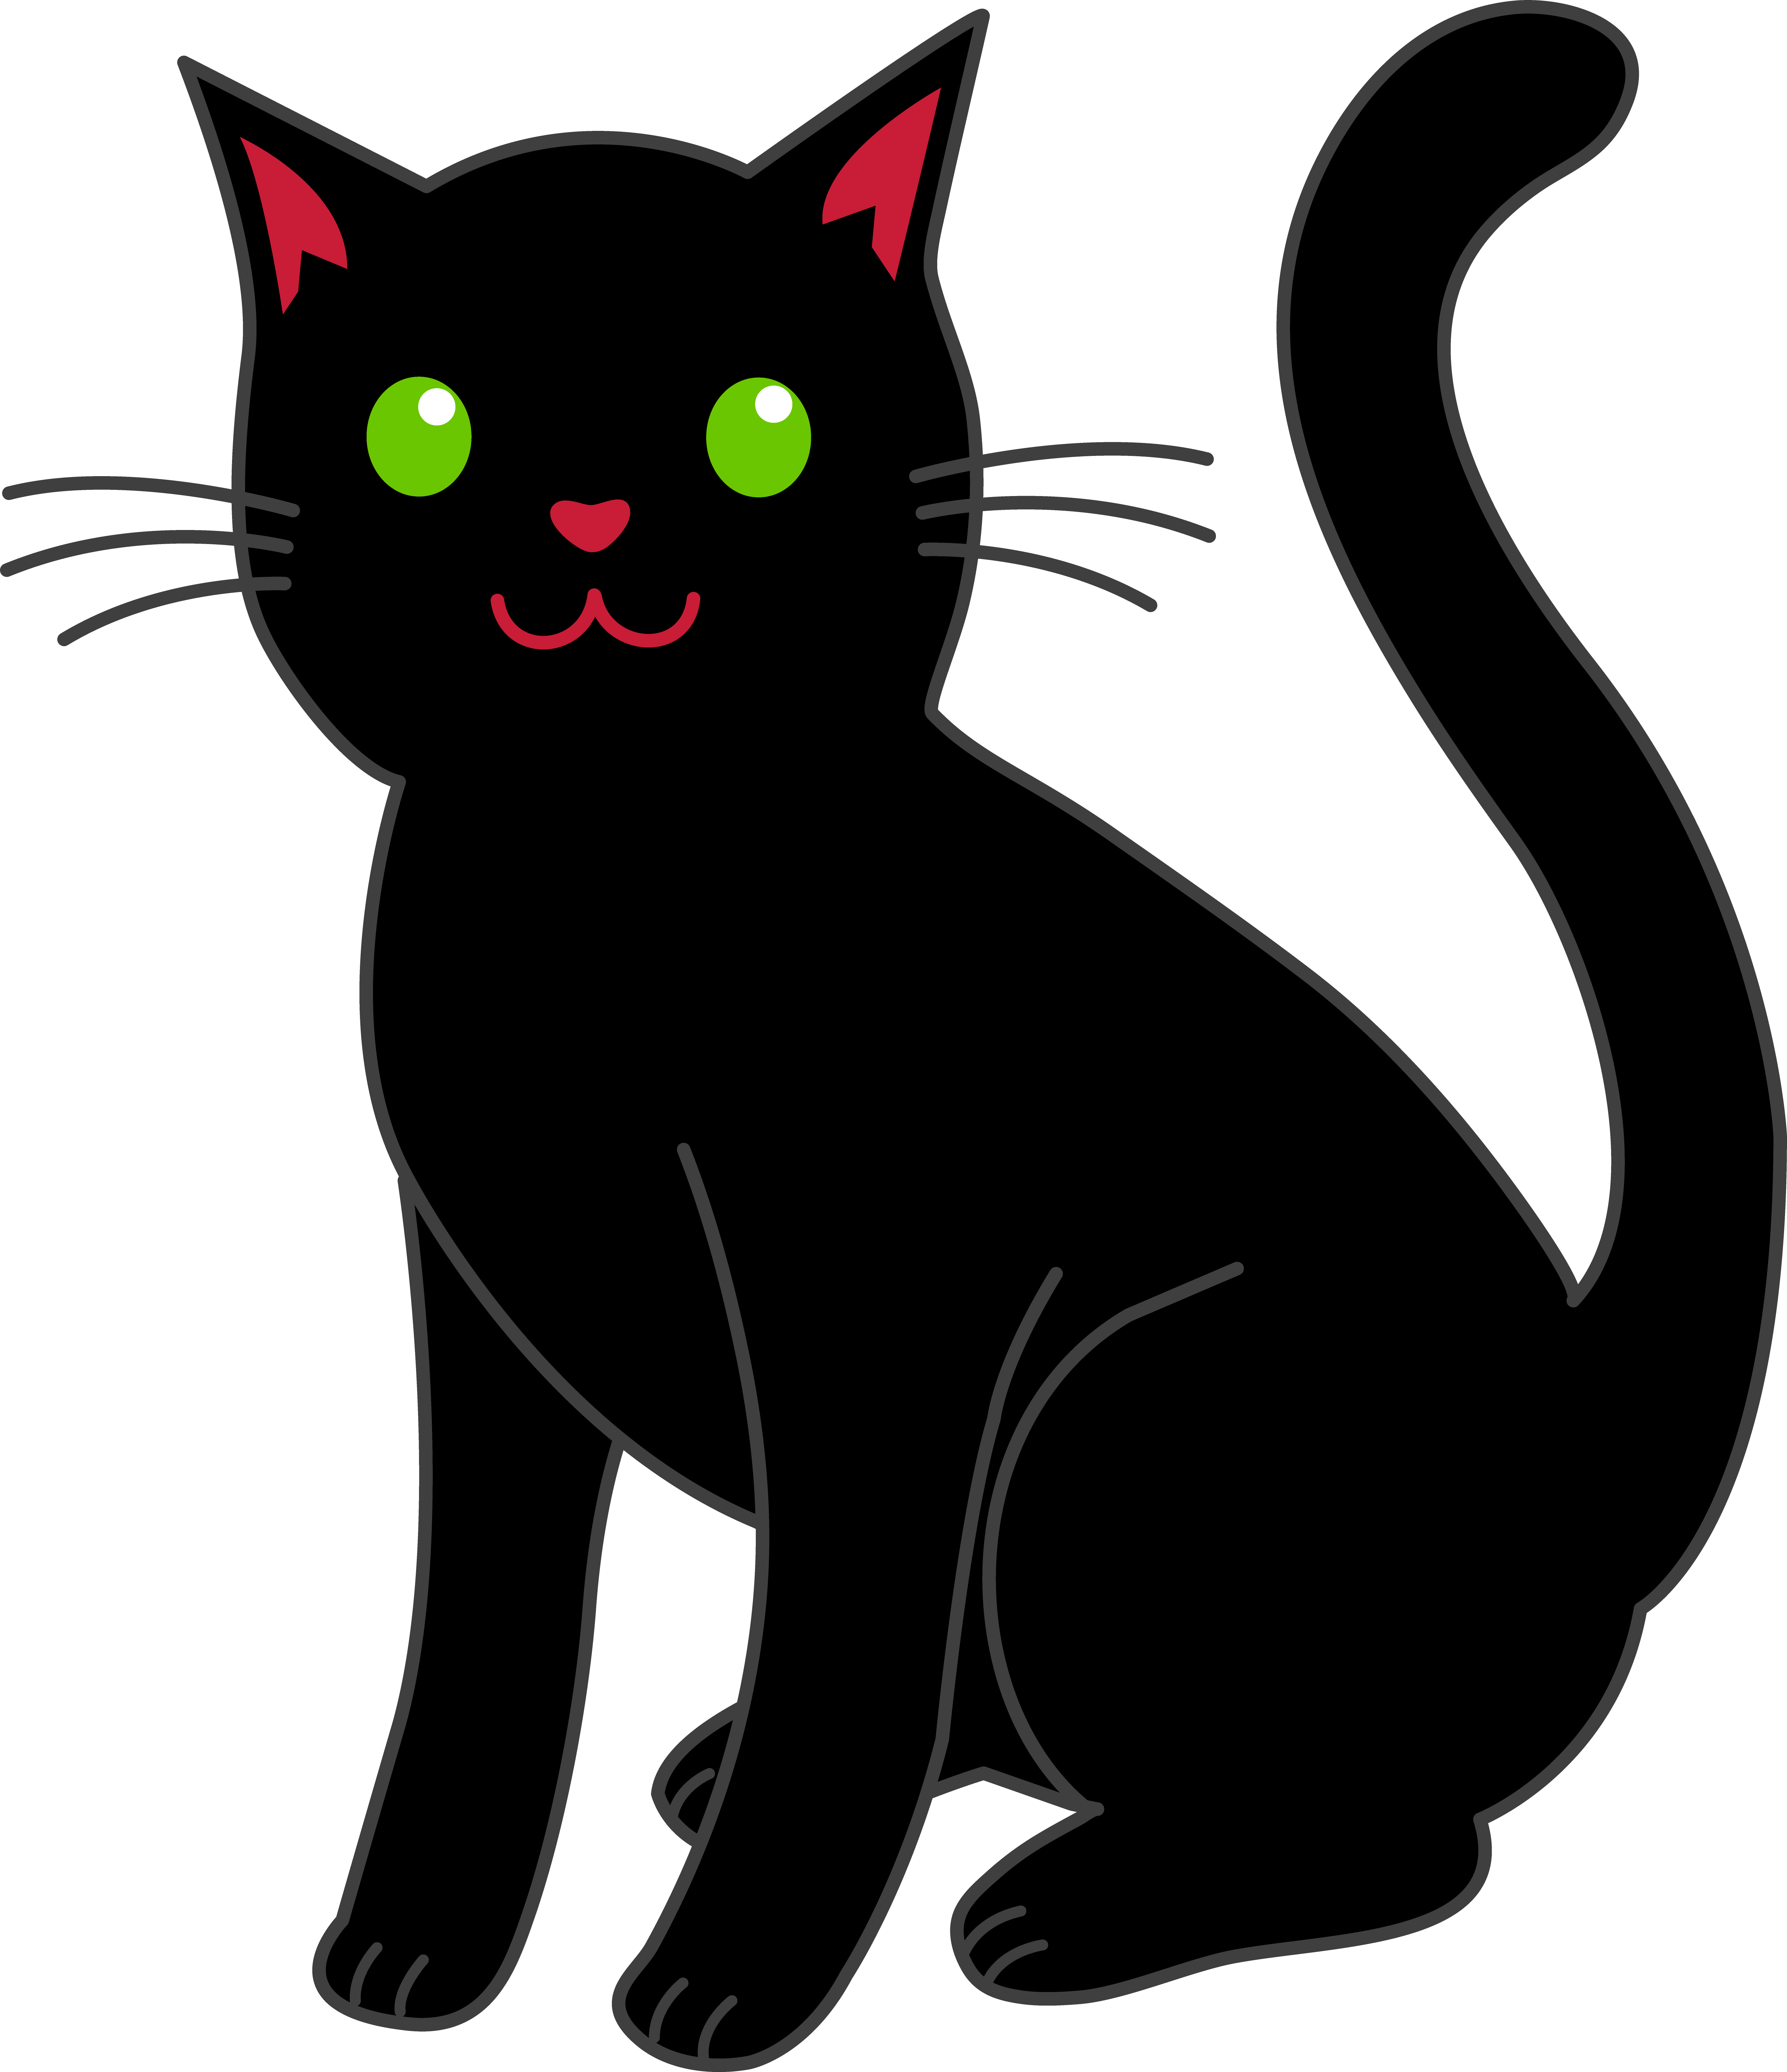 Black Cat Cartoon Picture - ClipArt Best - ClipArt Best - ClipArt Best